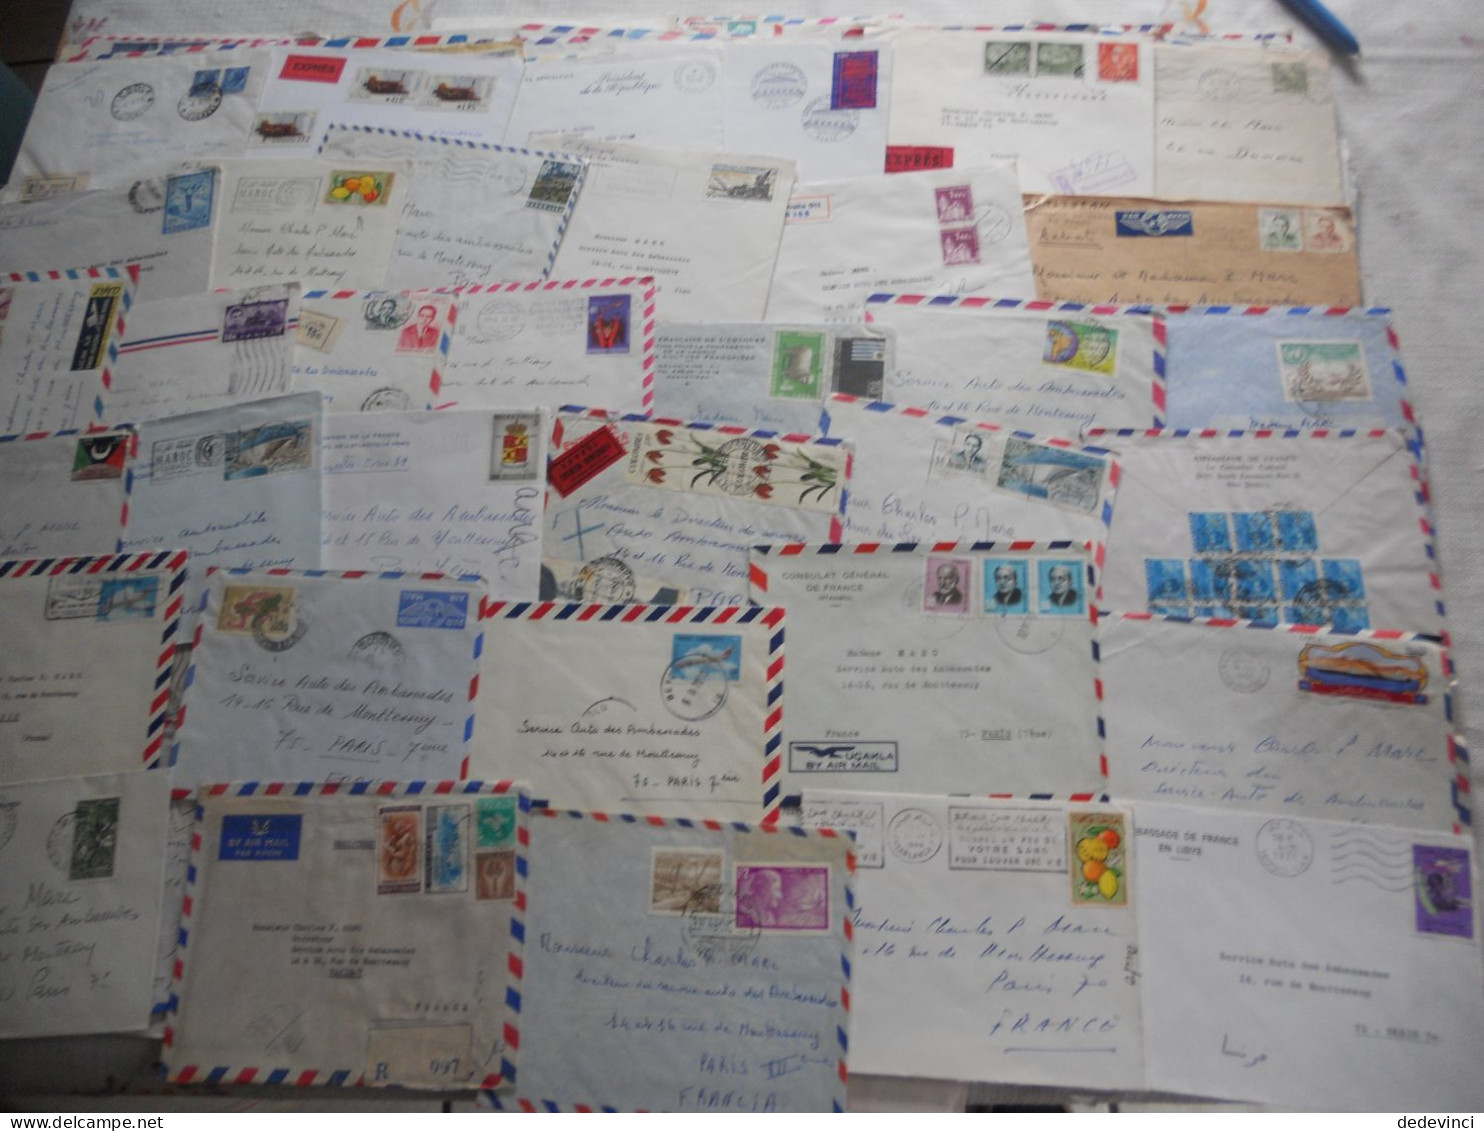 Lot de lettre issu archive pour Serv. auto Ambassade France des ambassade dans le monde, Reco, exprès...